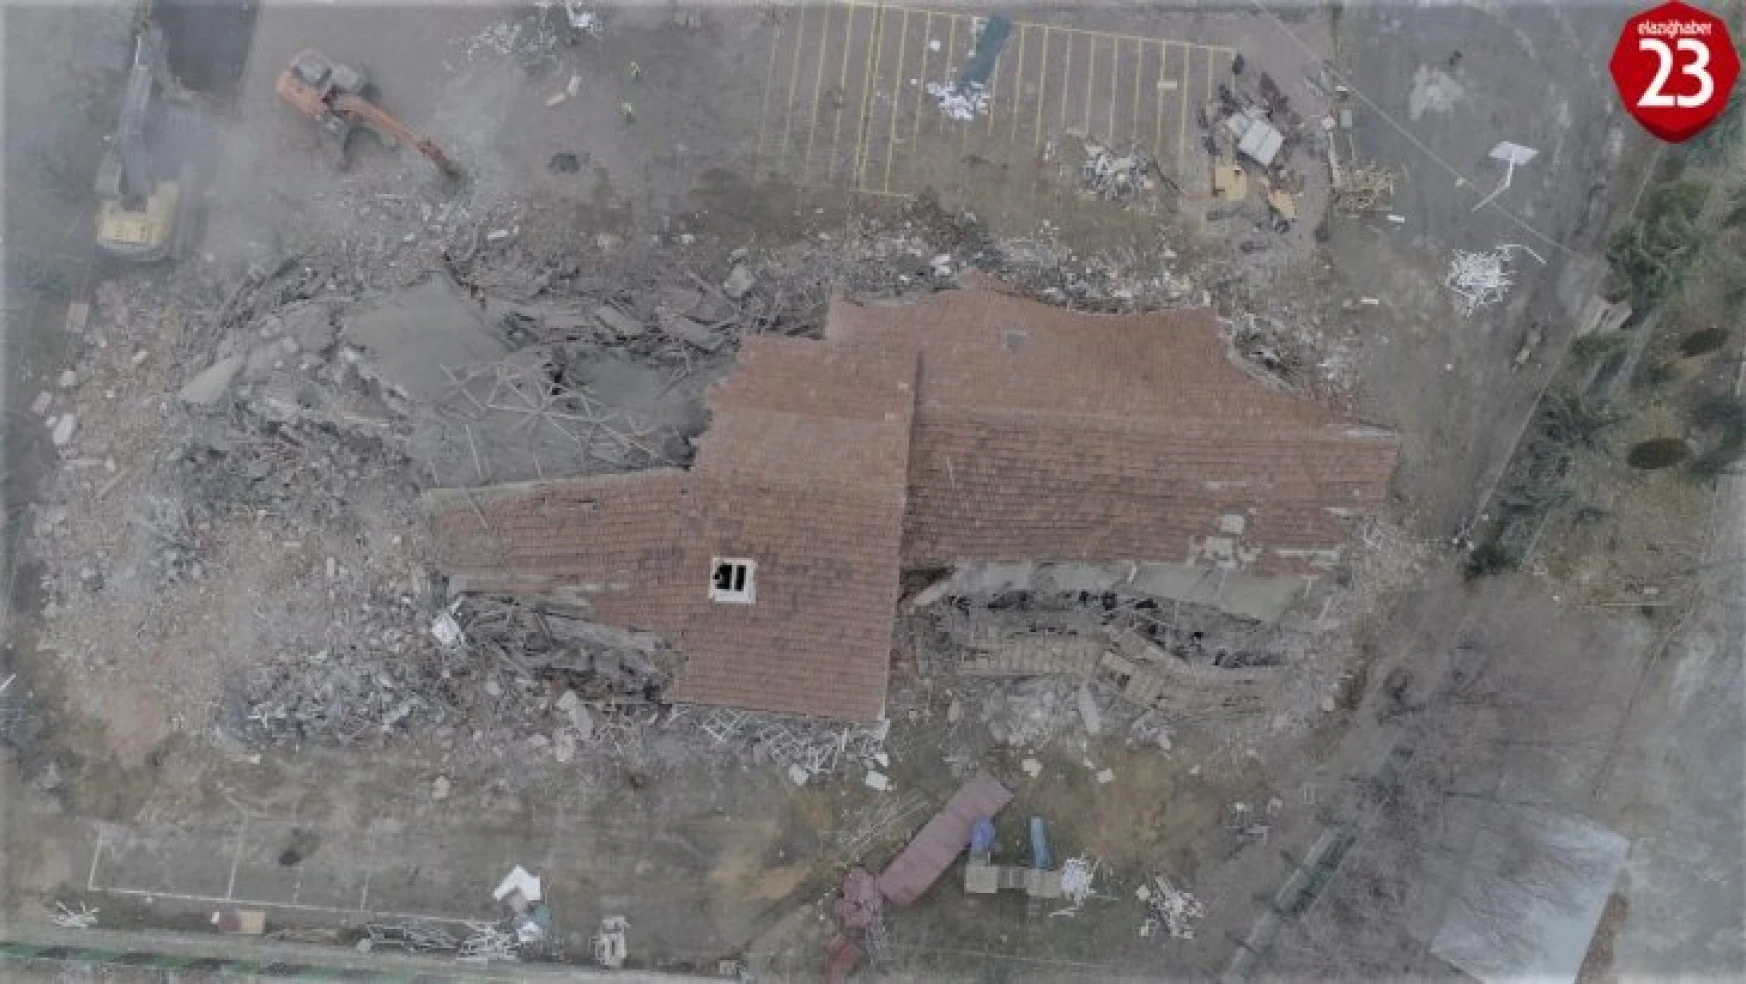 Elazığ'da depremde hasar gören okullar yıkılmaya başladı